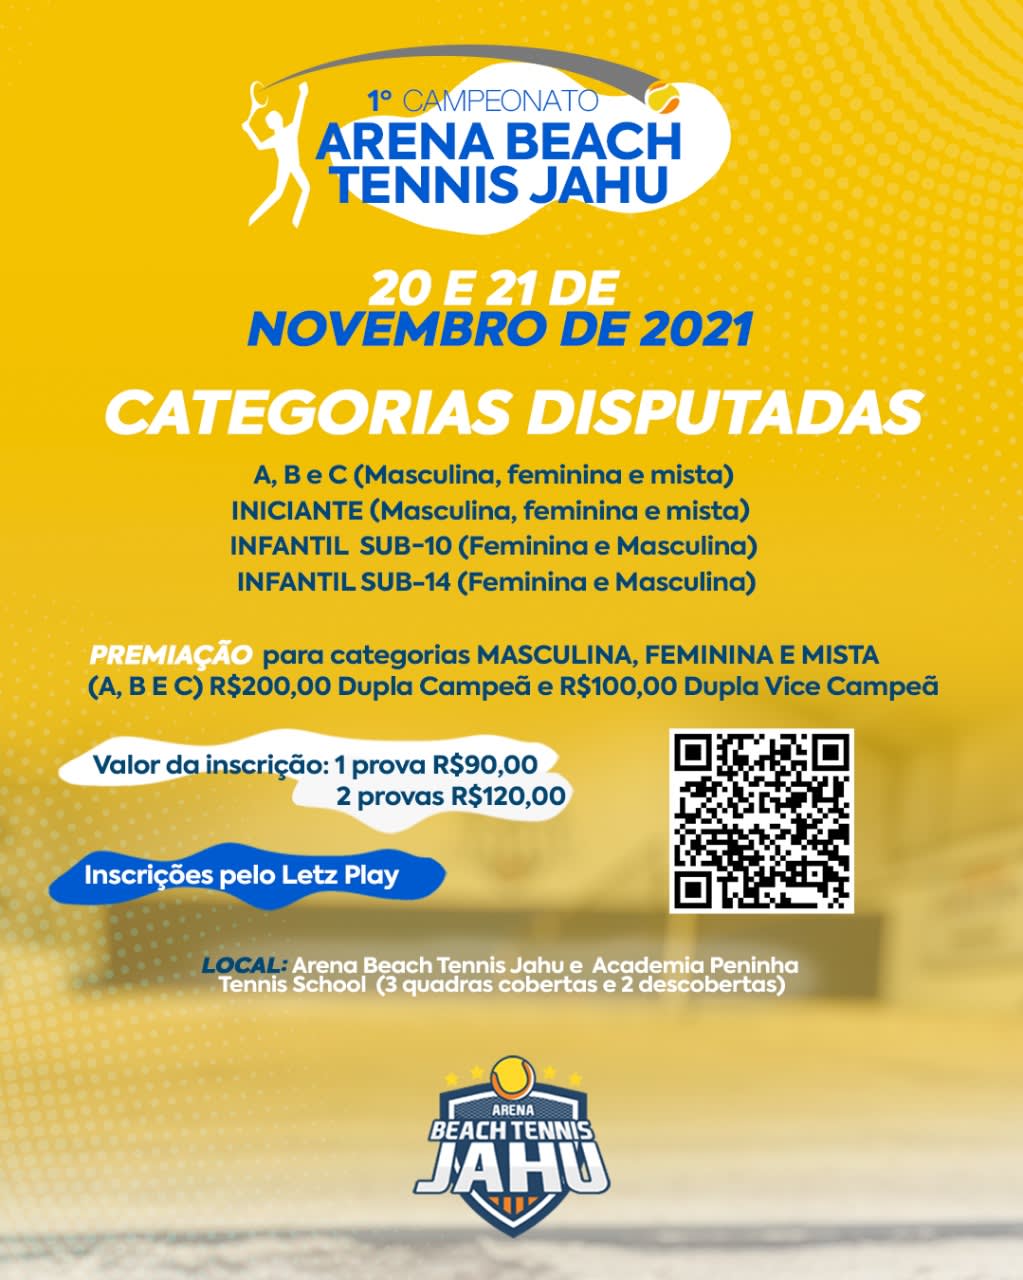 Torneio de Tênis Feminino 🎾 Atenção, - Clube Penapolense